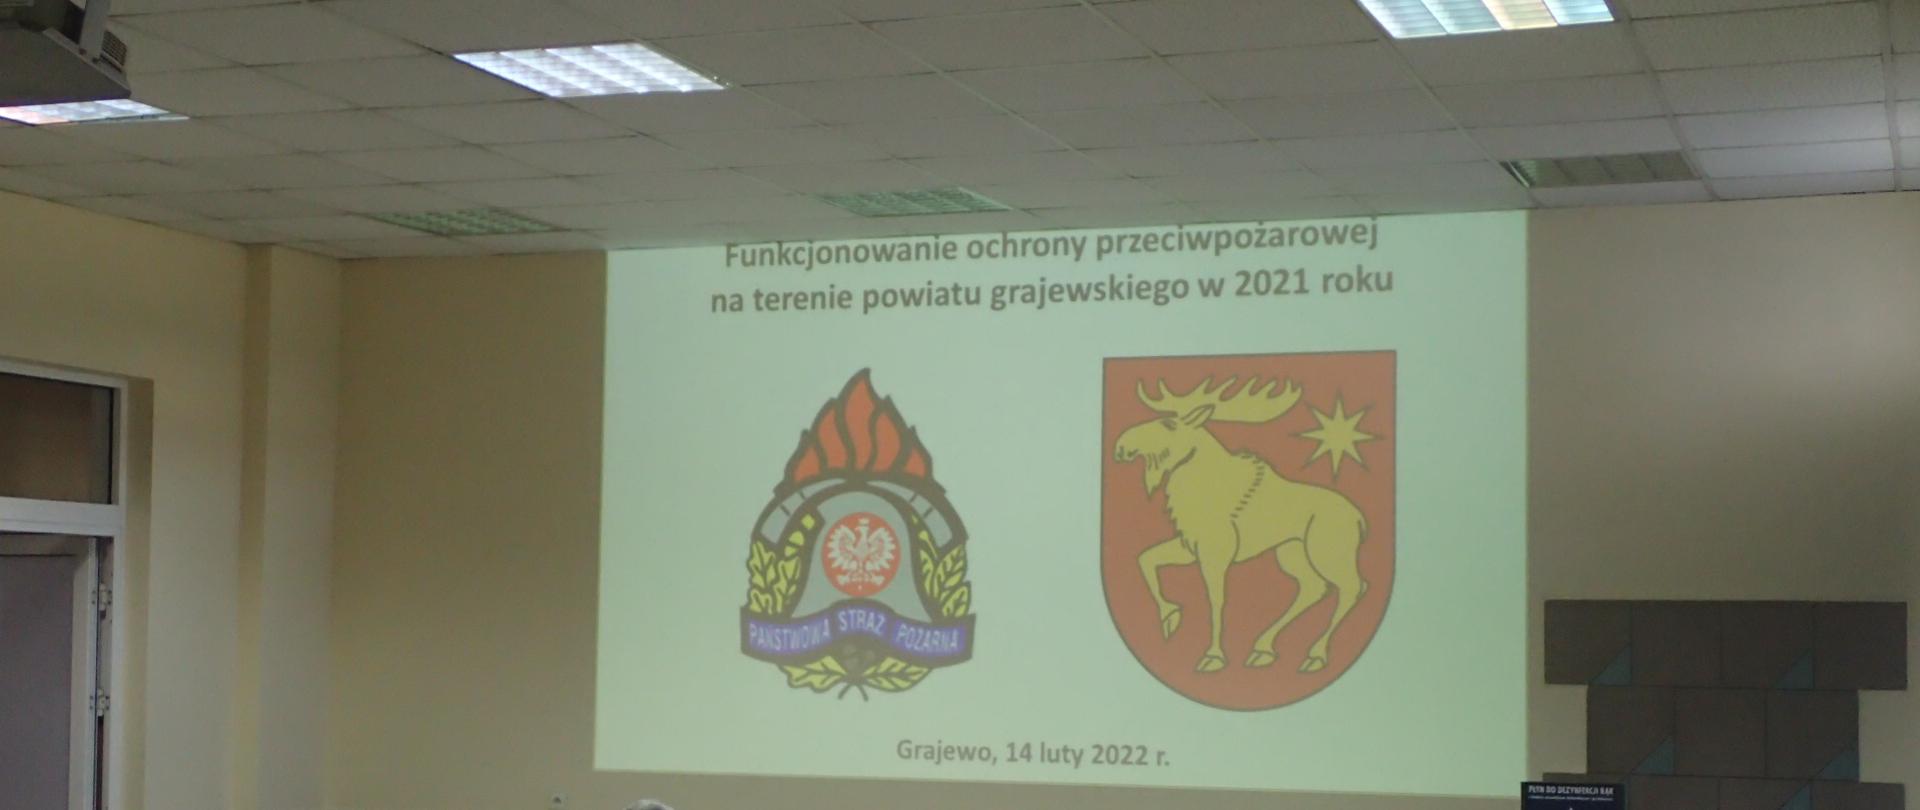 Logo PSP i herb powiatu grajewskiego wyświetlone na prezentacji multimedialnej